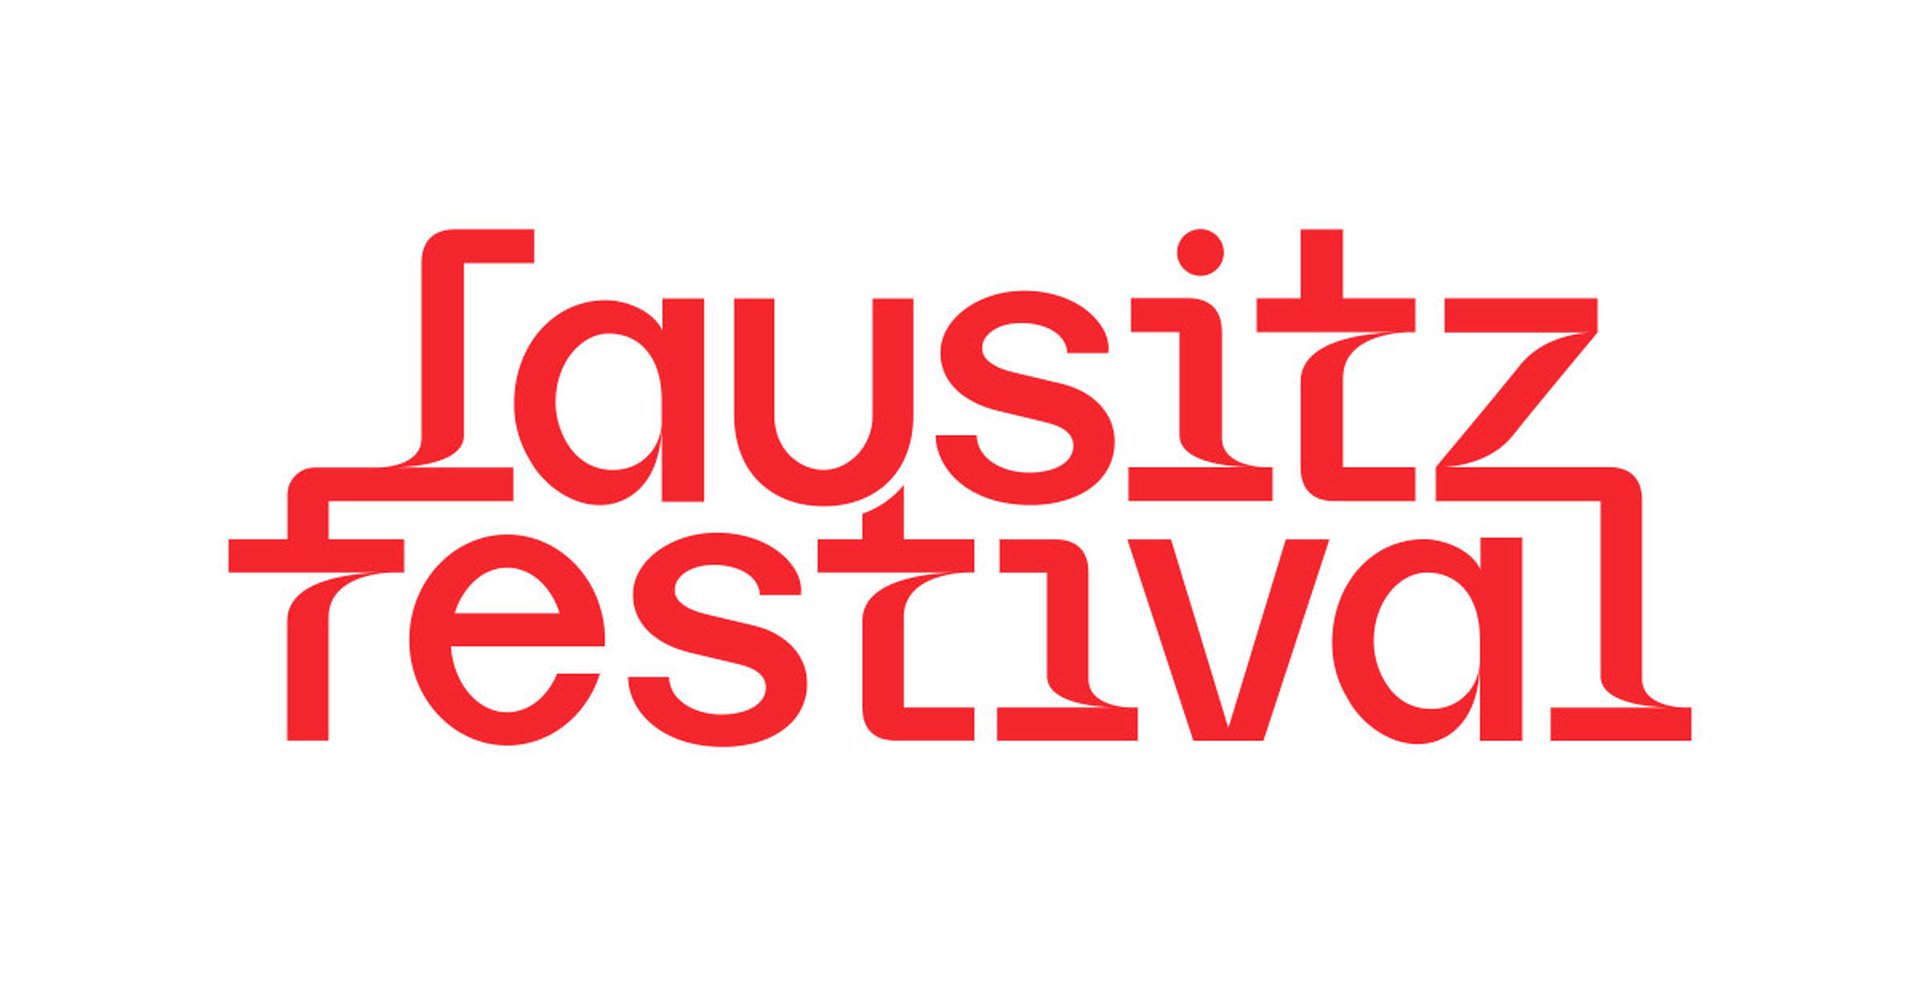 (c) Lausitz-festival.eu